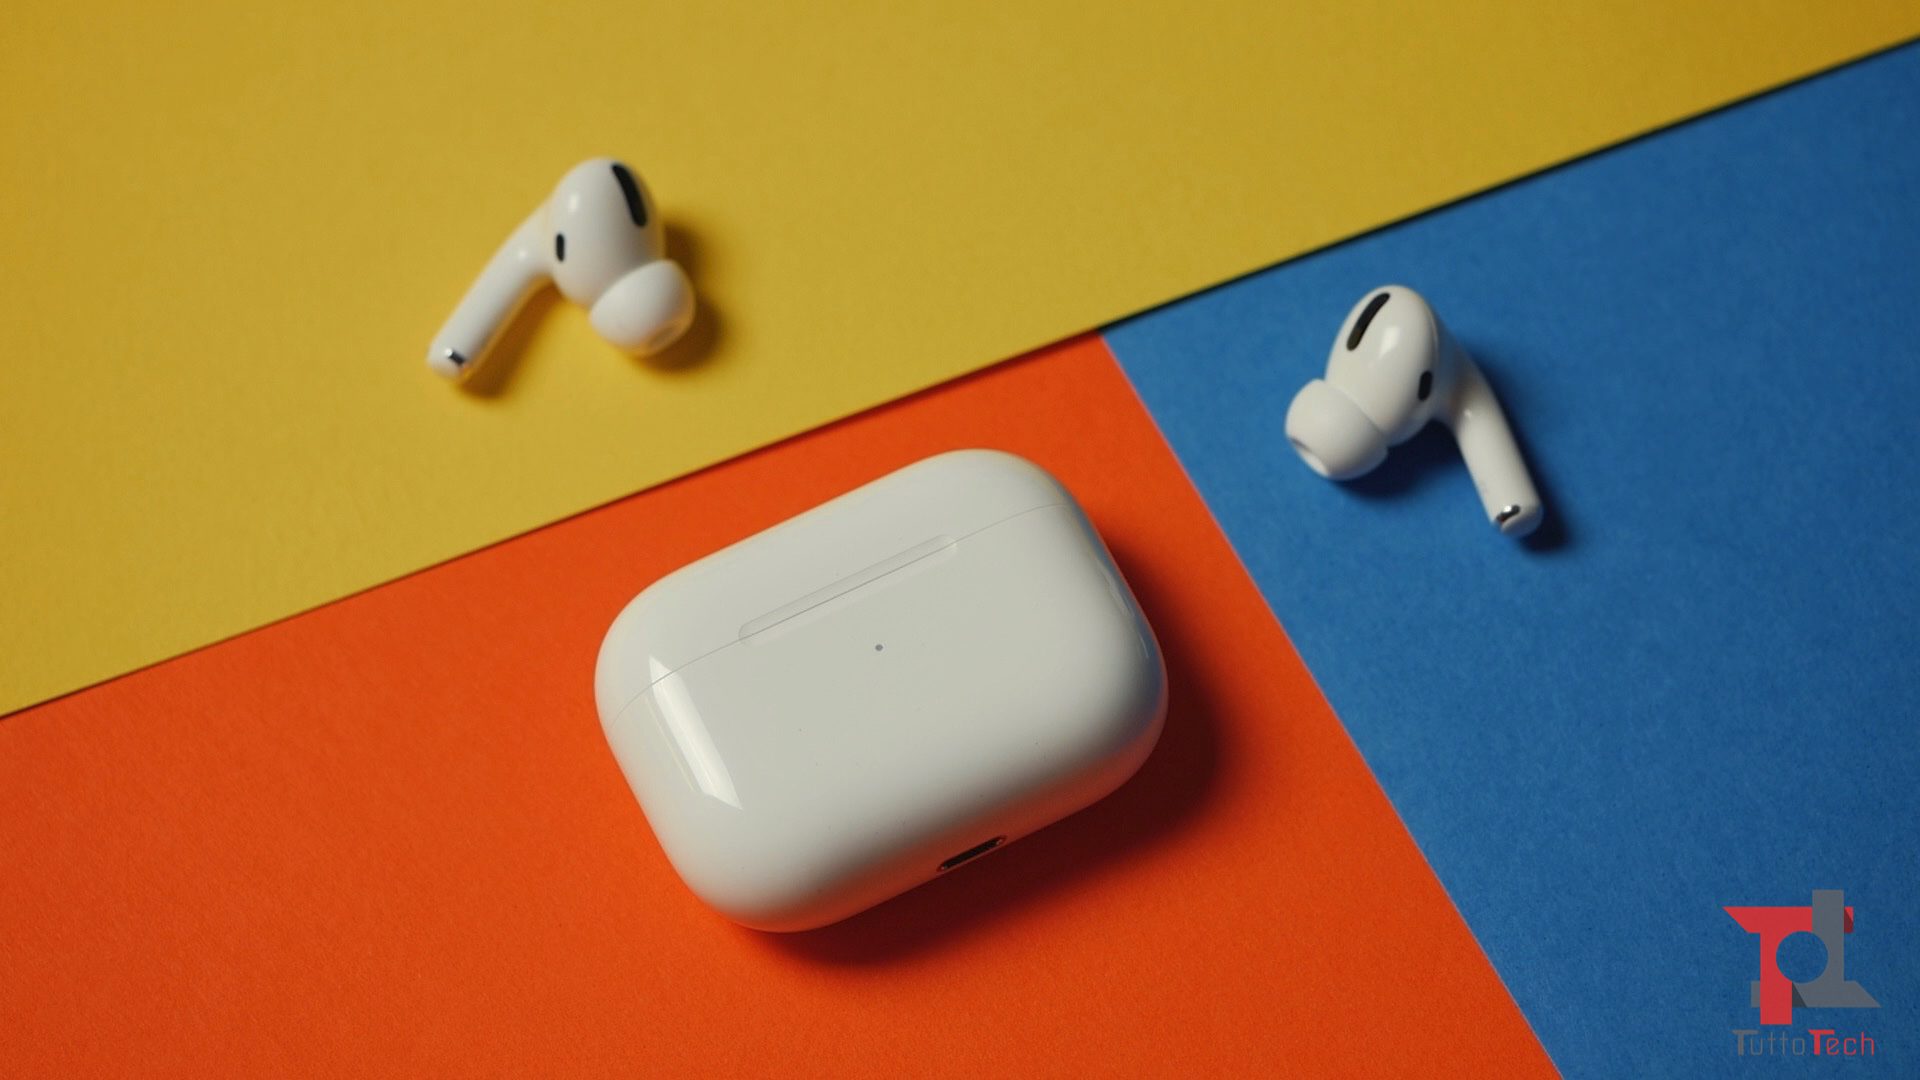 يتيح لك تطبيق CAPod الاستفادة بشكل أفضل من سماعات الرأس Apple AirPods على Android 31